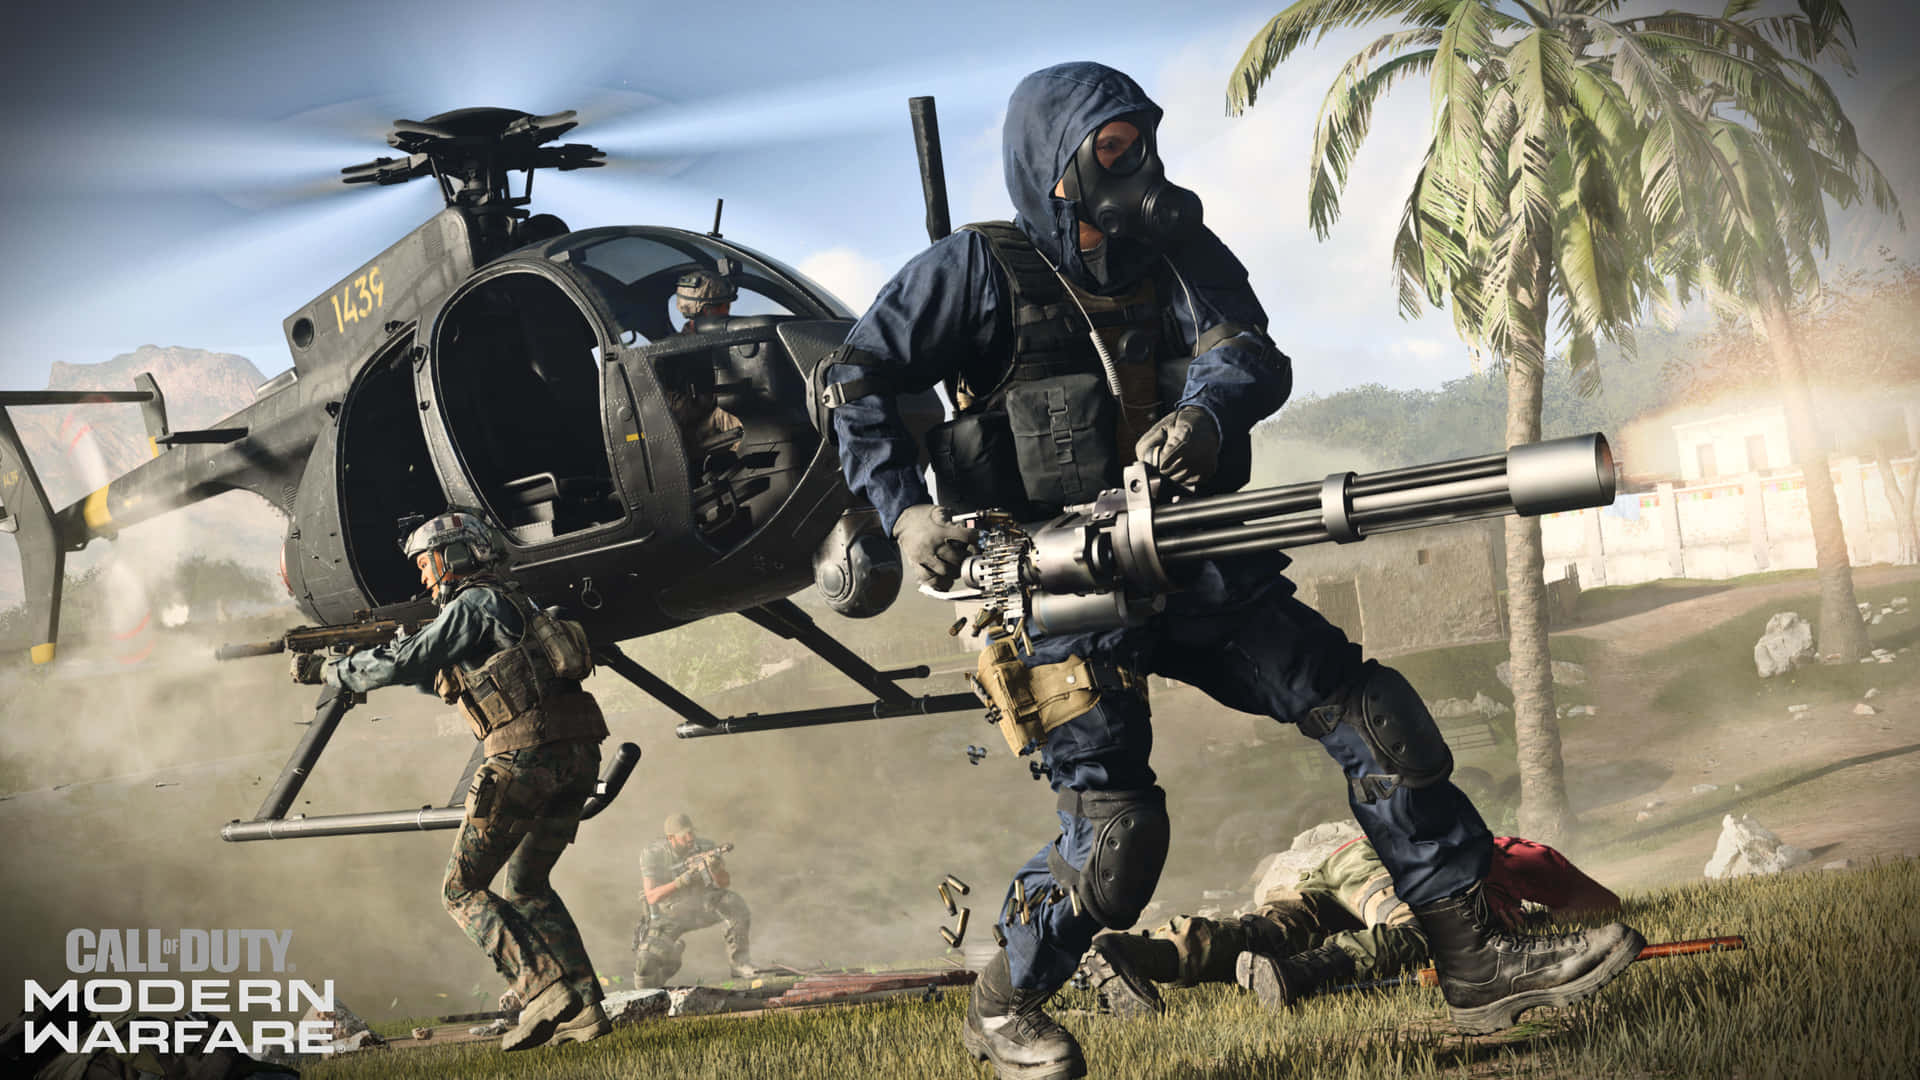 Behärskakonsten Av Modern Krigföring I Call Of Duty: Modern Warfare.